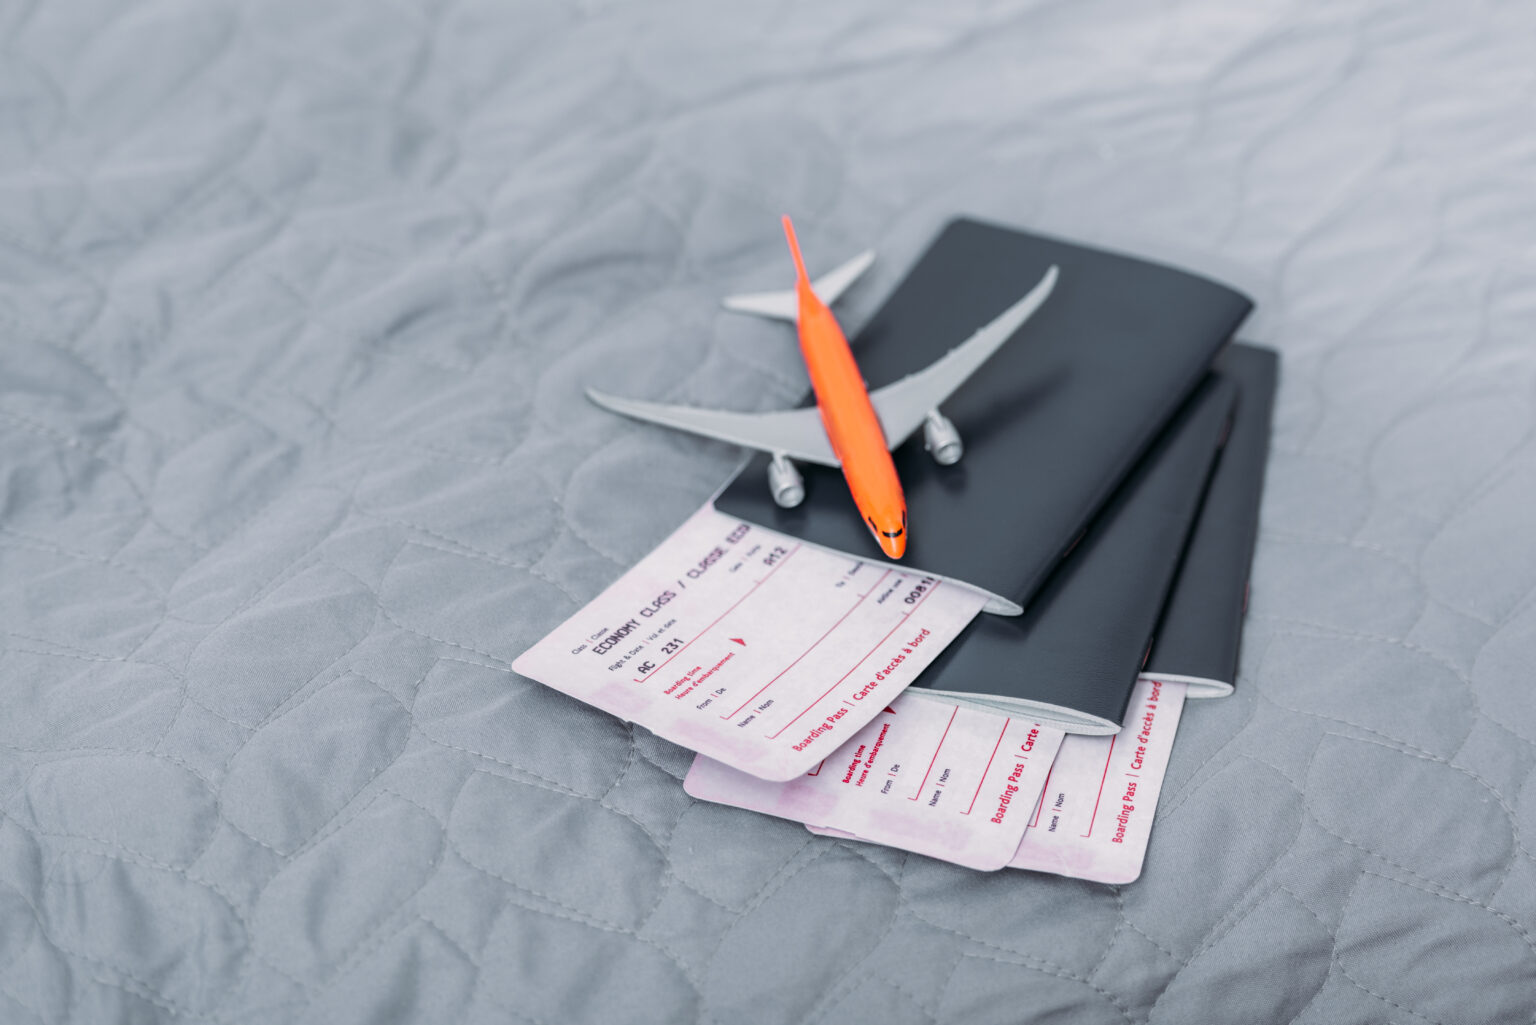 Grauer Tisch auf dem zwei Flugtickets liegen die in zwei Passports stecken. Darauf ein kleines Spielzeugflugzeug